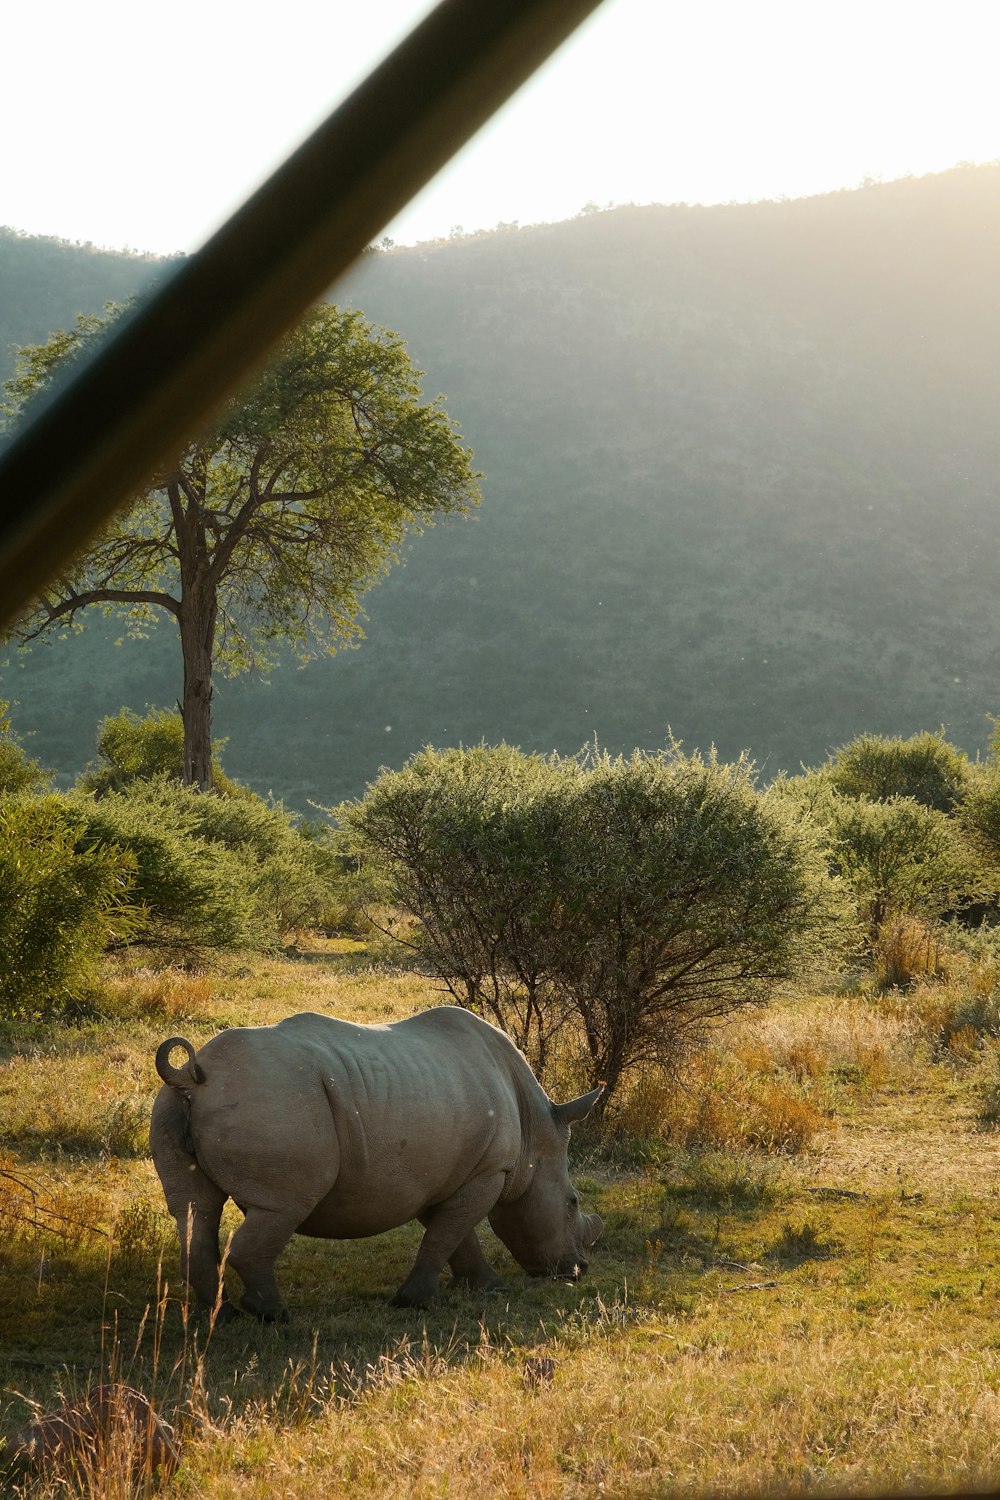 a rhinoceros in a field